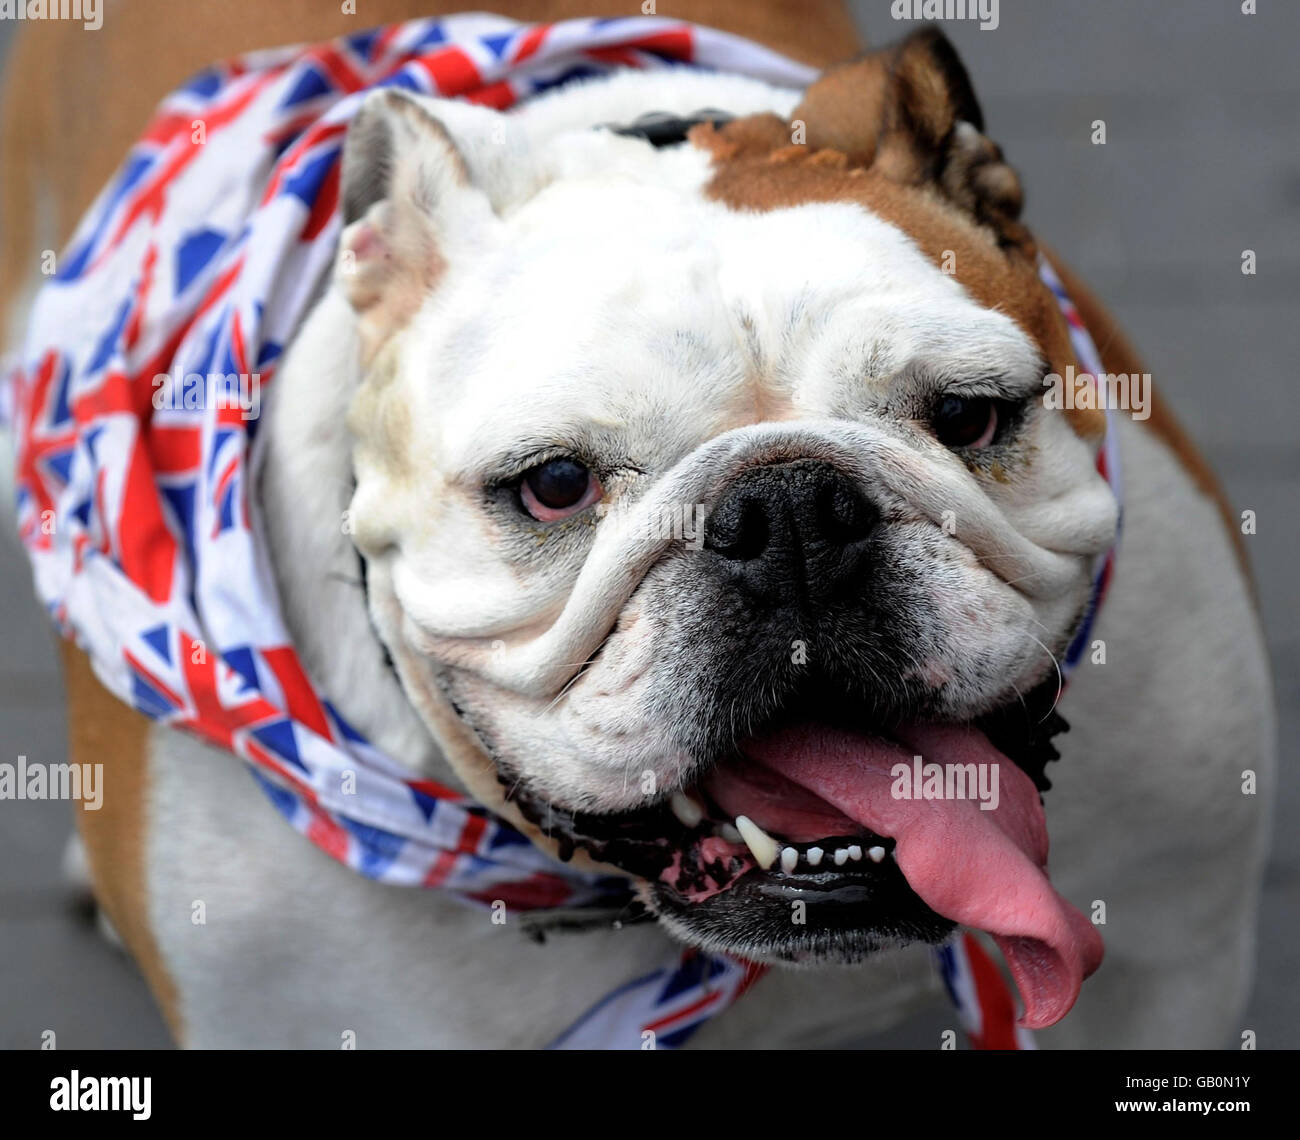 Britische Bulldog. Molly, eine britische Bulldogge, kühlt sich heute mit etwas Wasser ab, als sie in Middlesbrough spazieren geht. Stockfoto